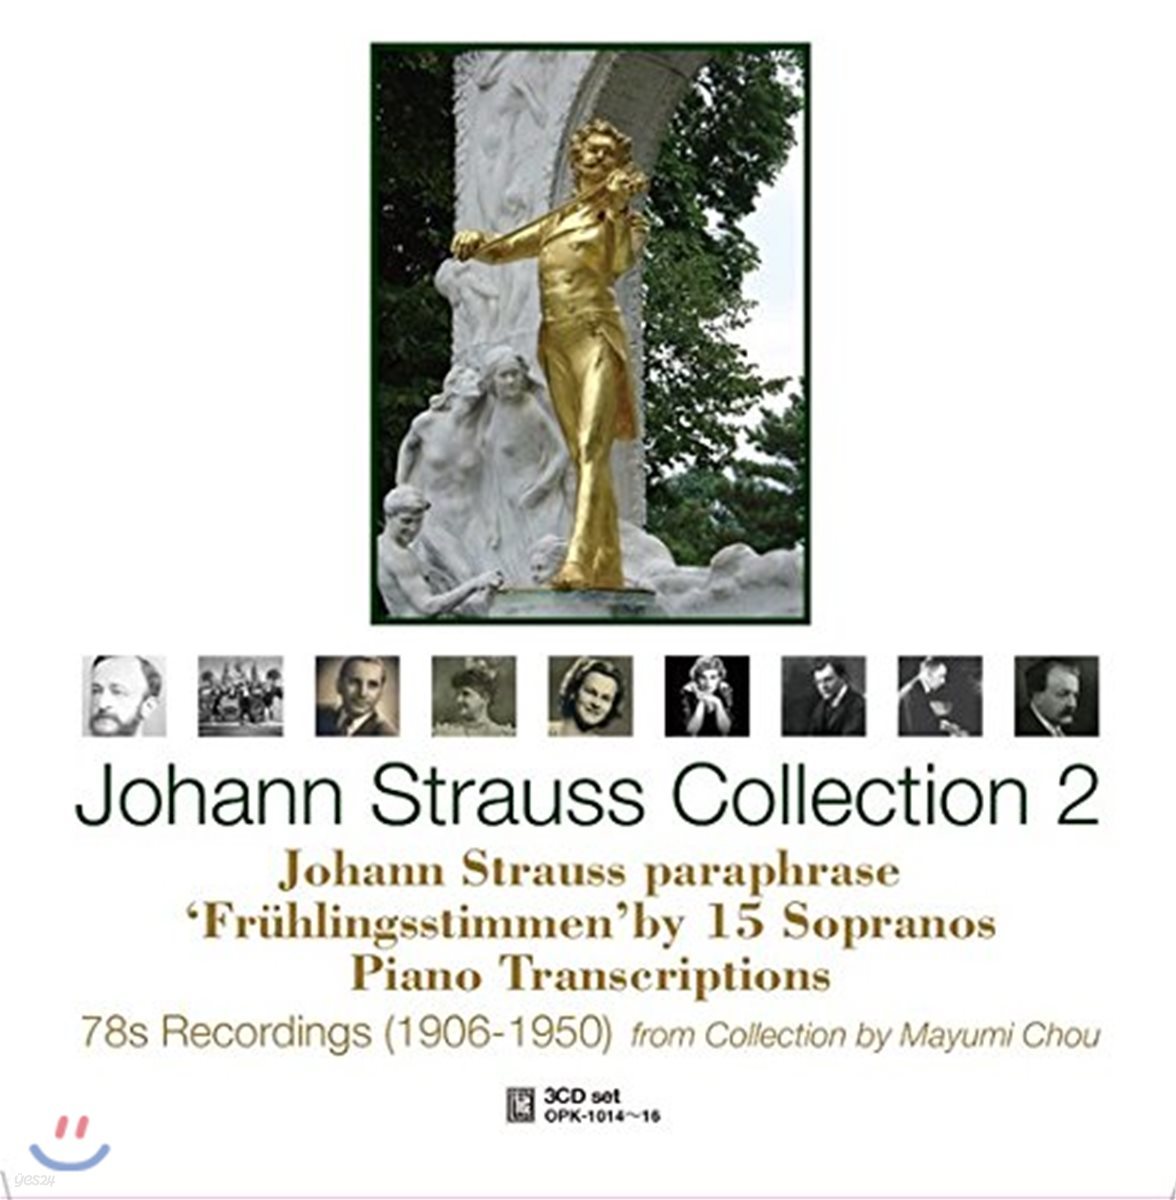 요한 슈트라우스 작품 컬렉션 2집 (Johann Strauss Collection 2)